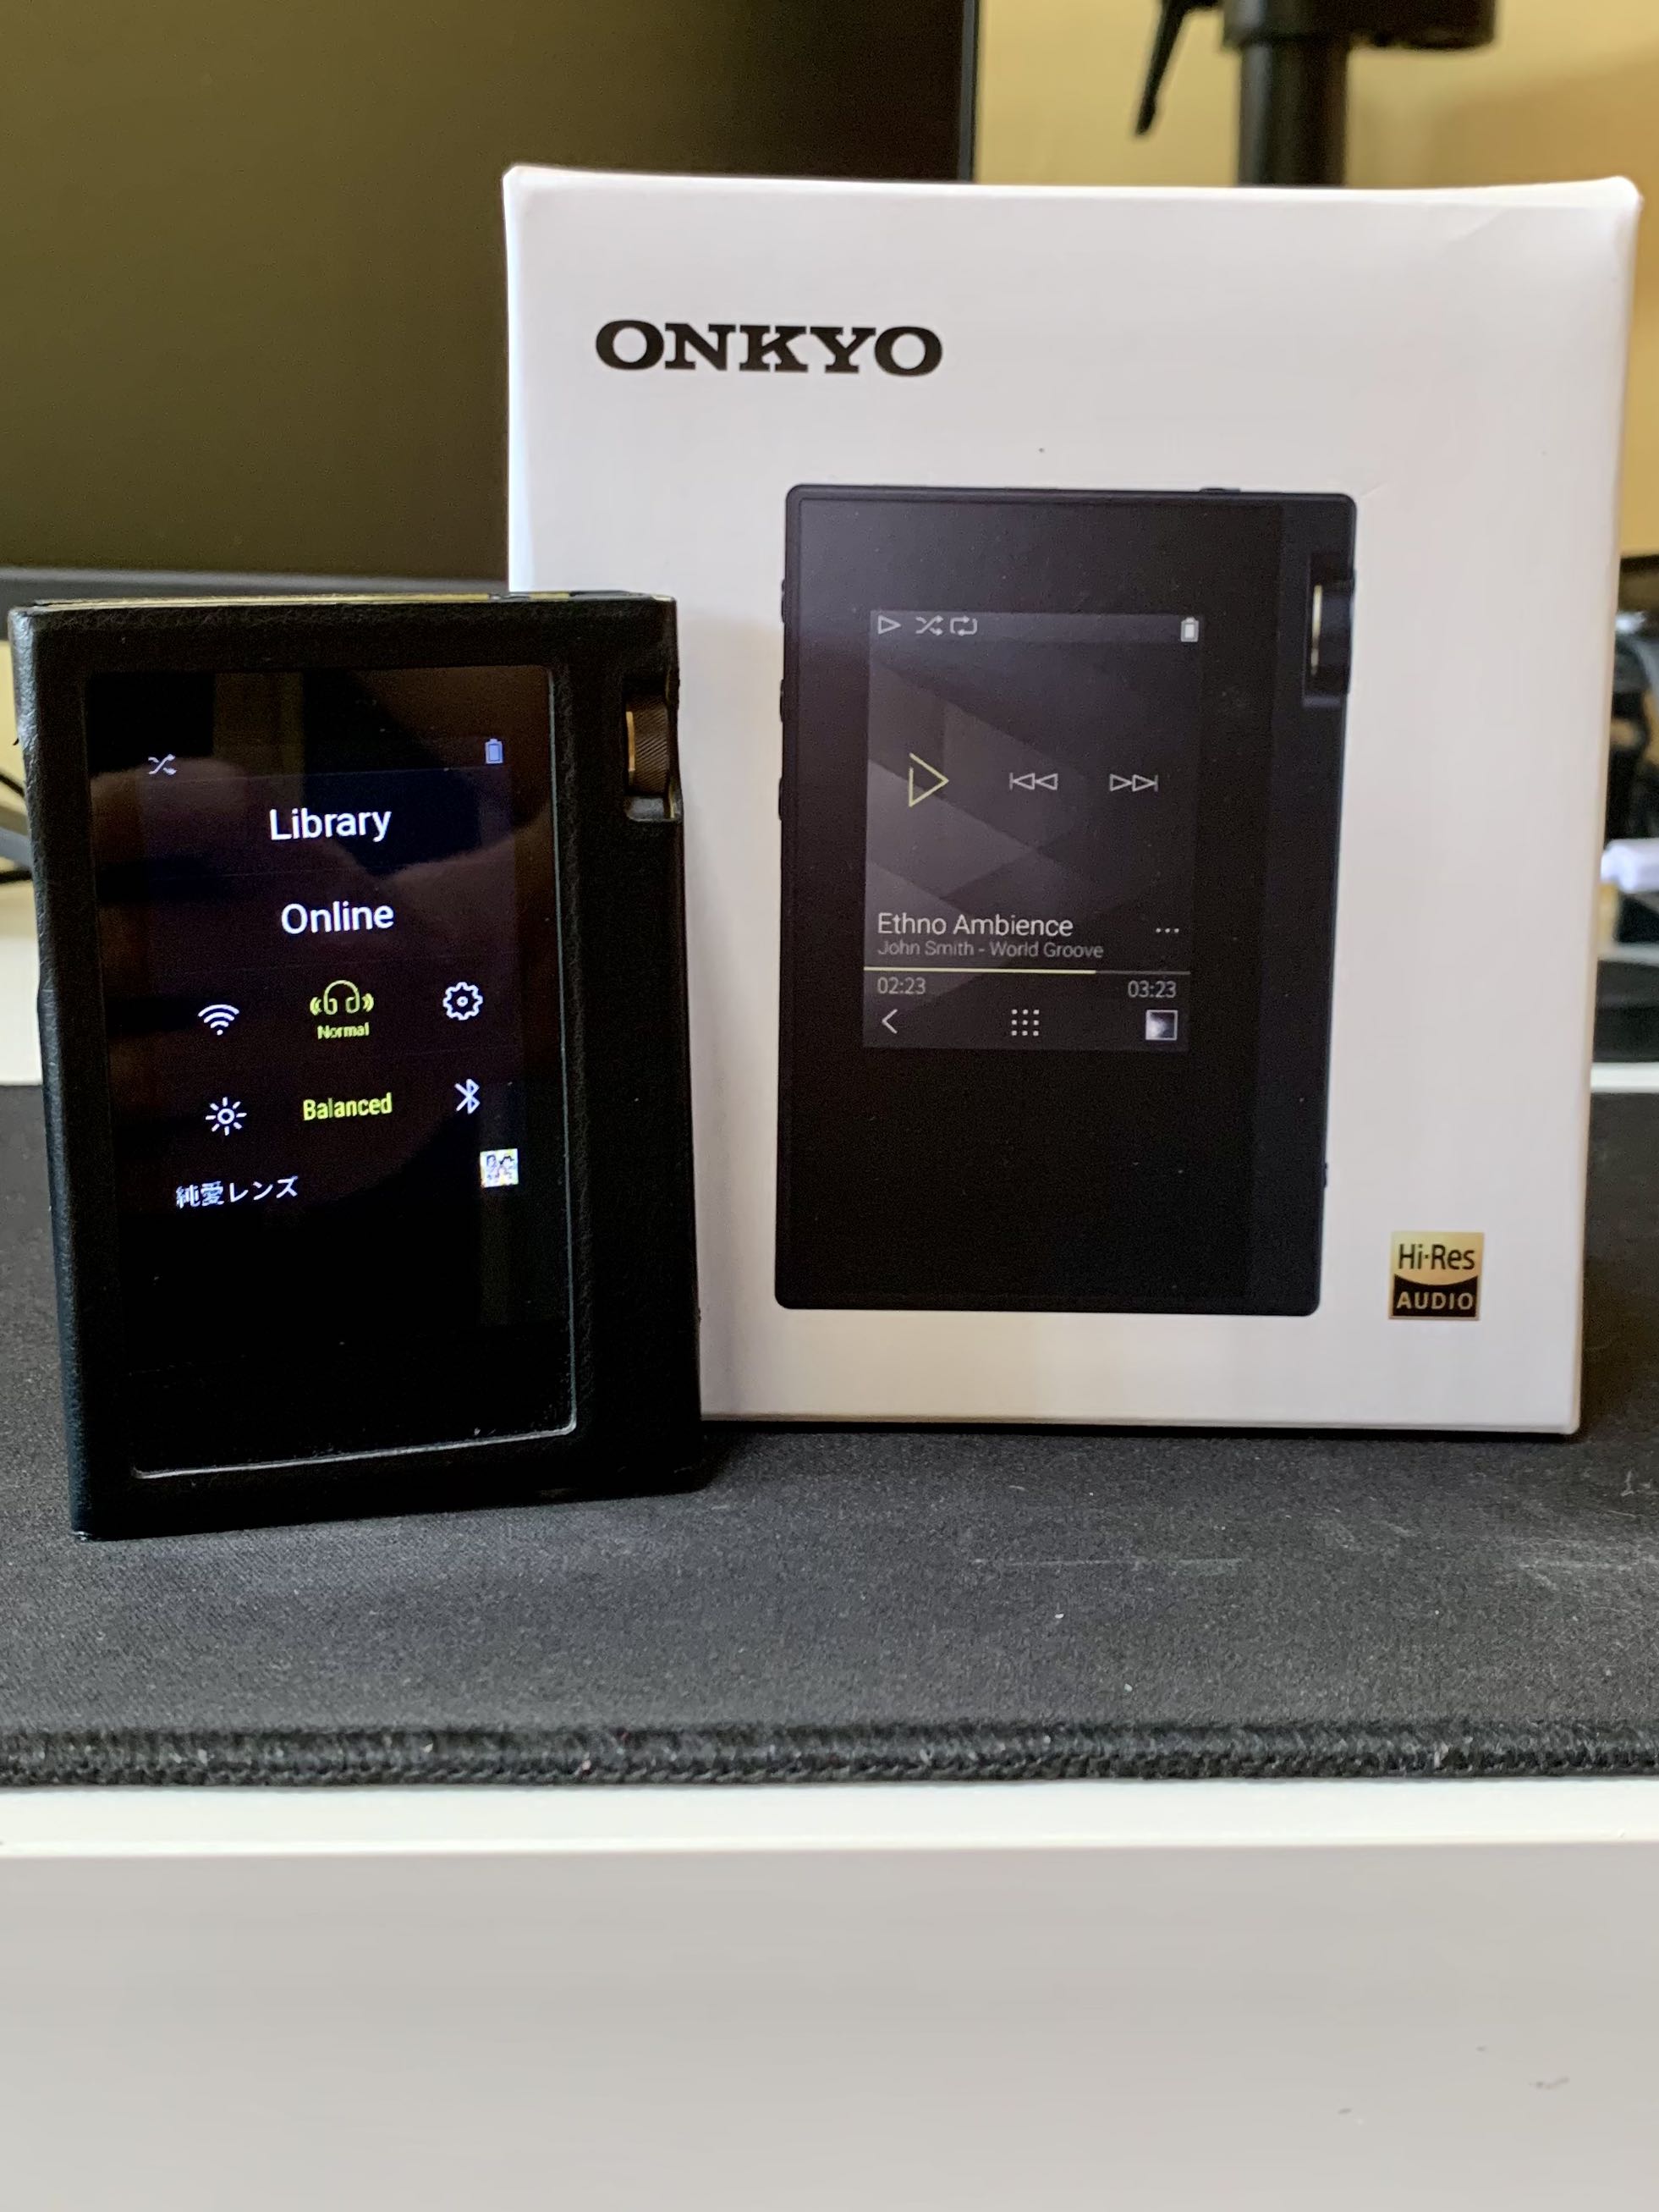 ONKYO hi-resデジタルオーディオプレーヤーDP-S1 (本体のみ) - 通販 ...